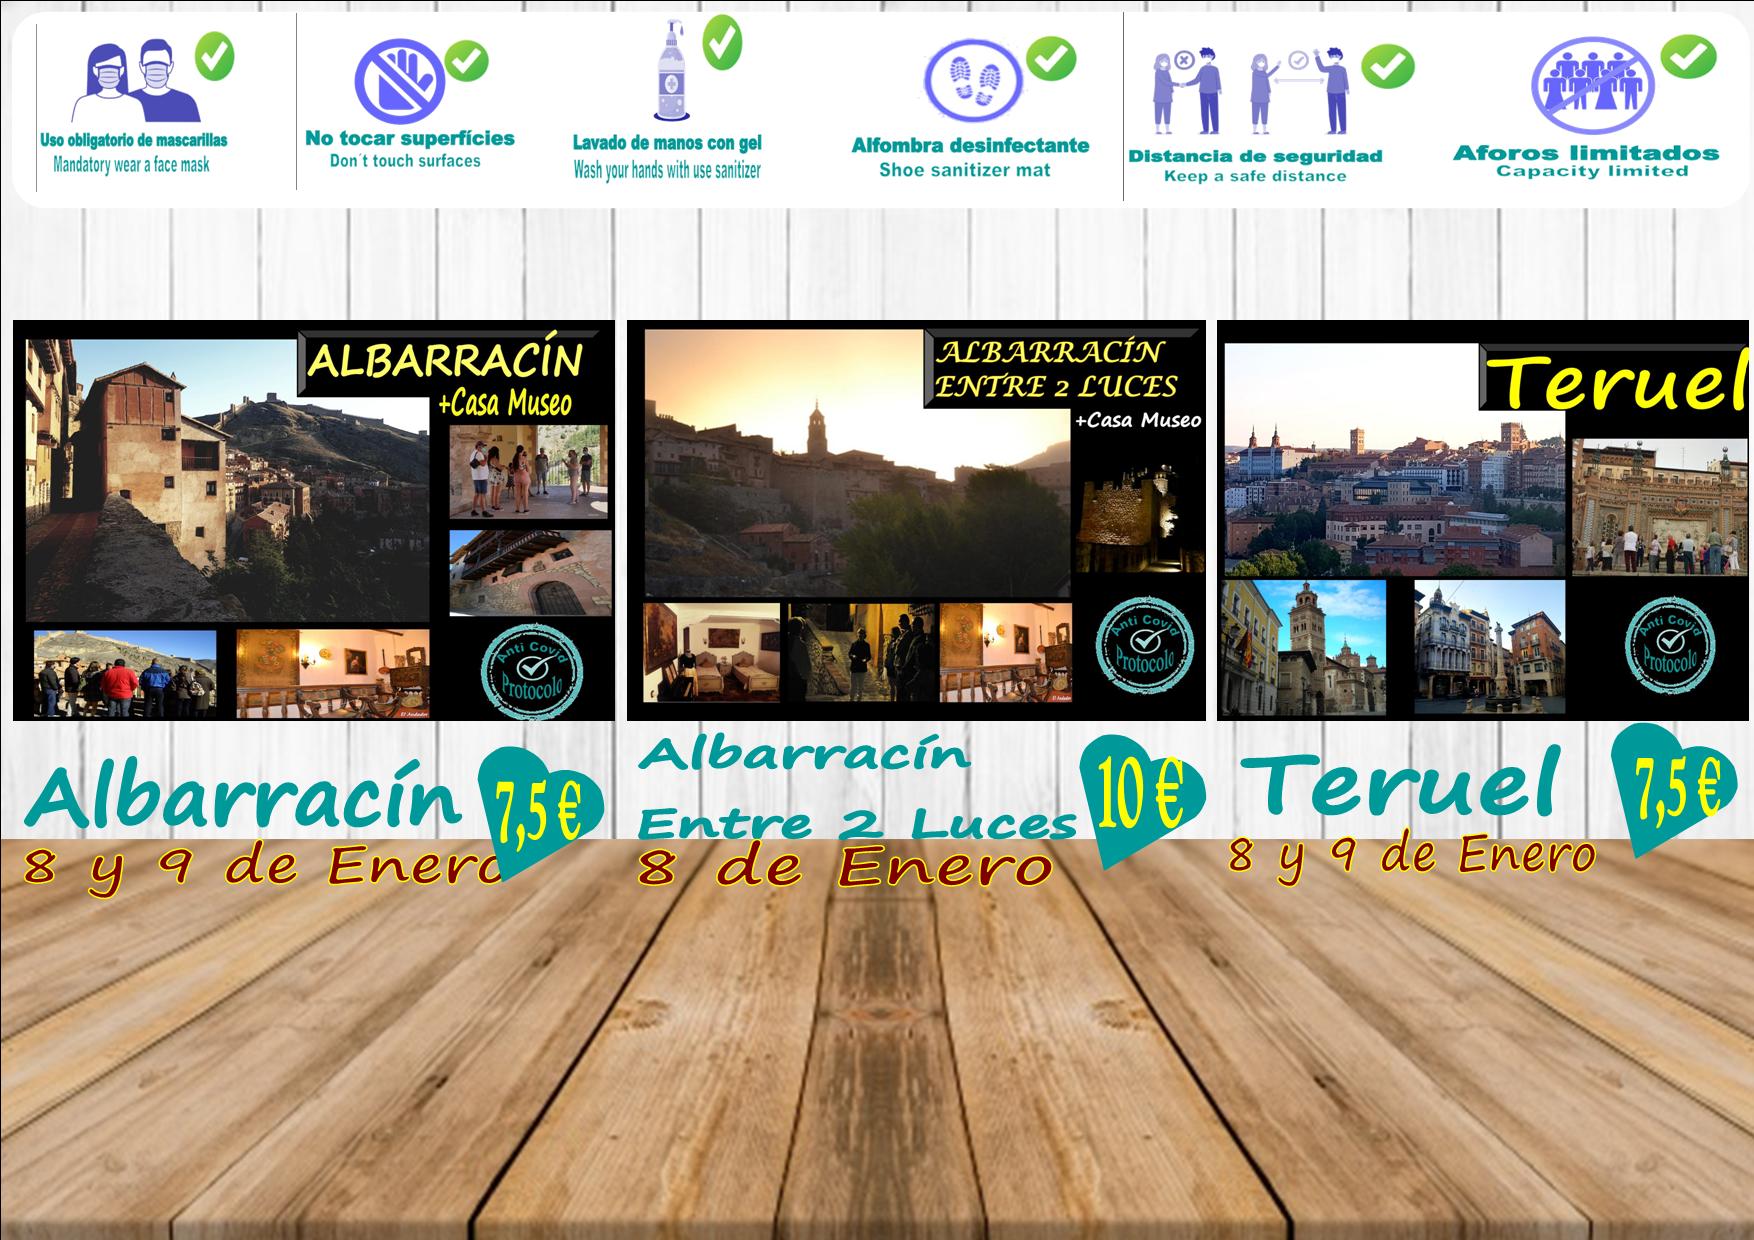 Planes de Visitas Guiadas en Albarracín y Teruel para este fin de semana! Reserva tu plaza!